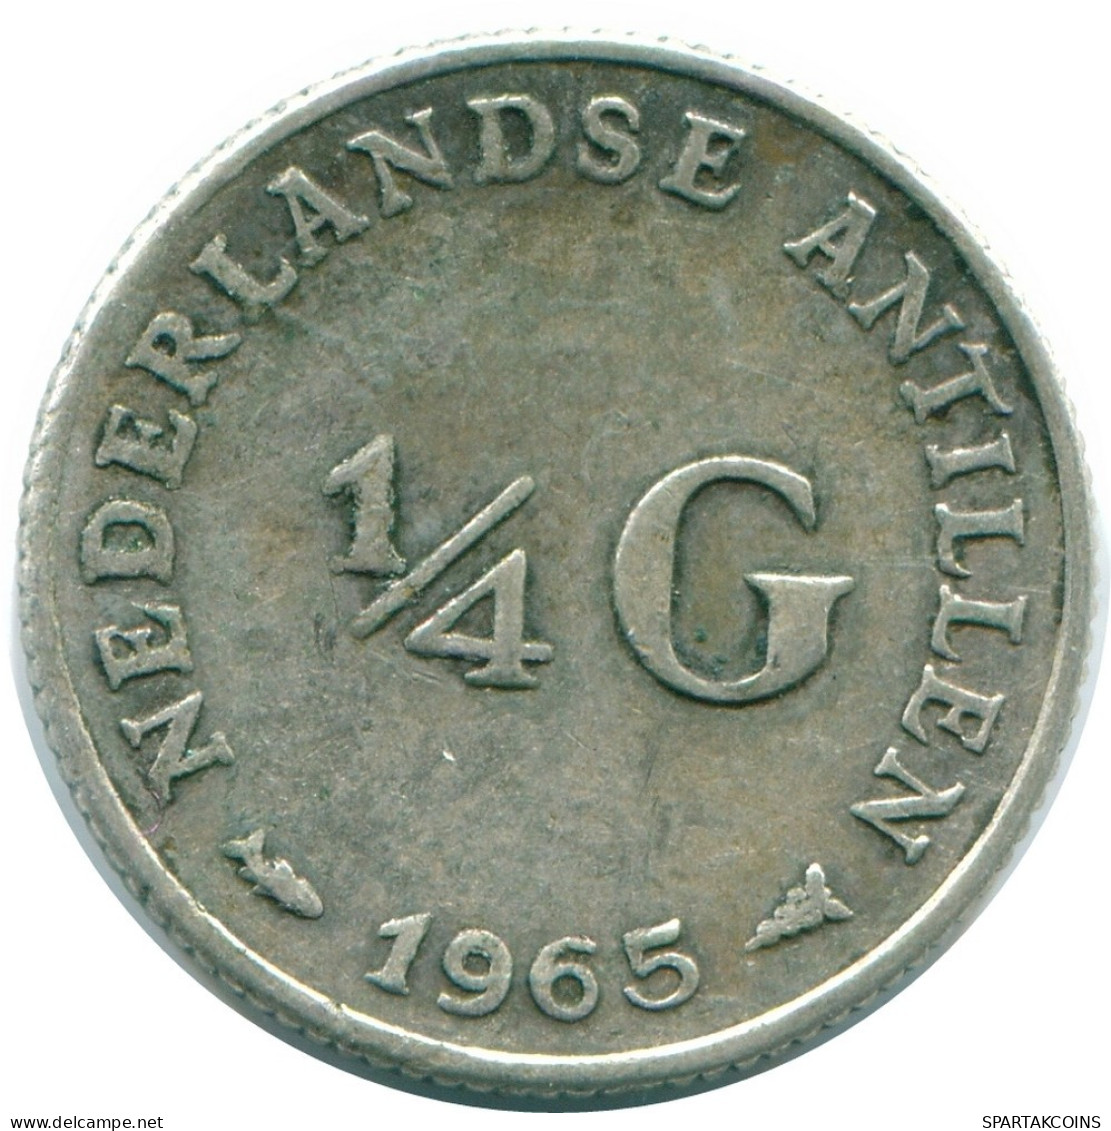 1/4 GULDEN 1965 NIEDERLÄNDISCHE ANTILLEN SILBER Koloniale Münze #NL11357.4.D.A - Niederländische Antillen